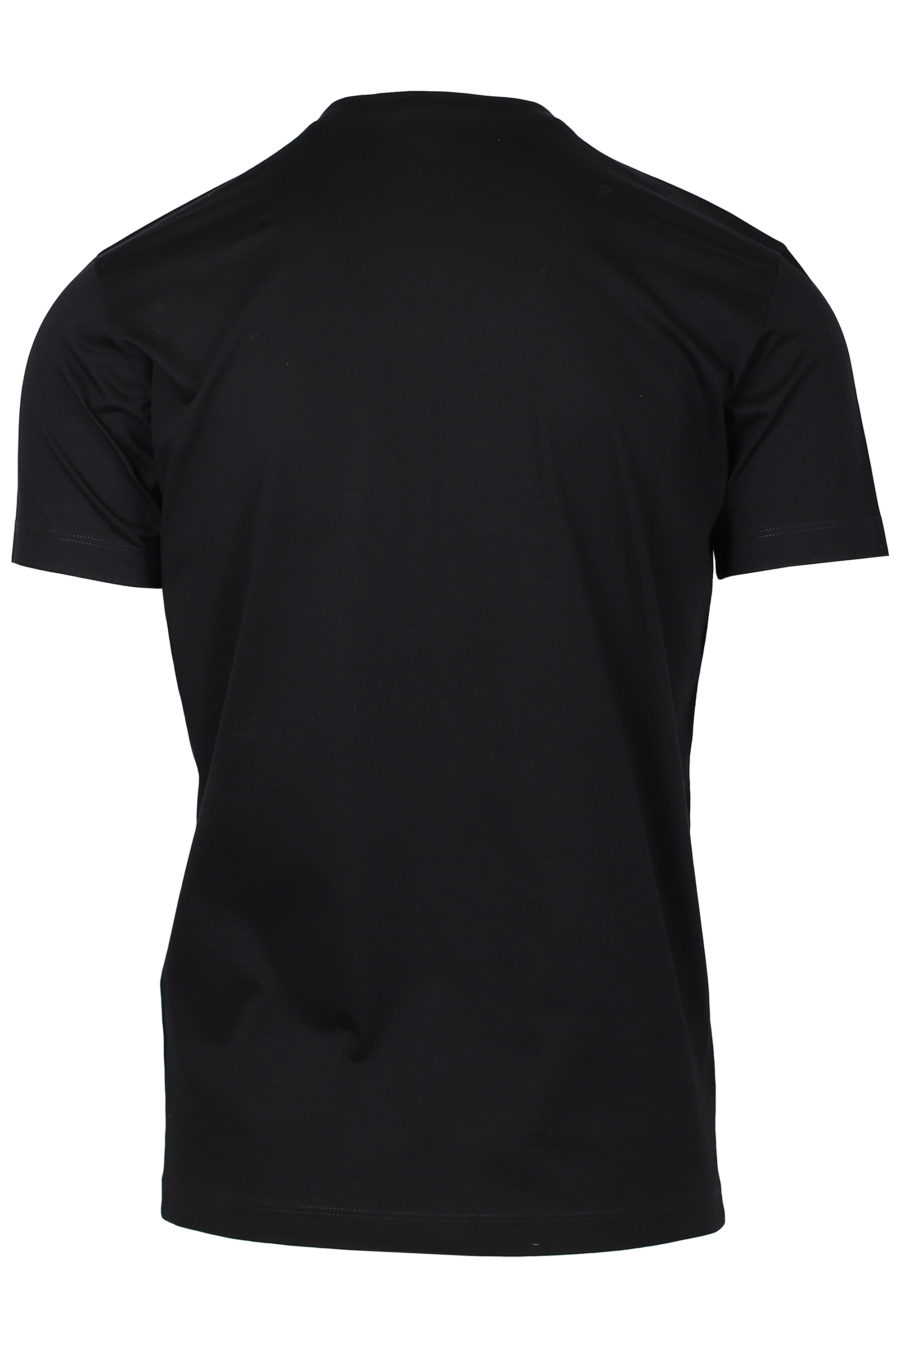 Camiseta negra con logo de la marca spray - IMG 2233